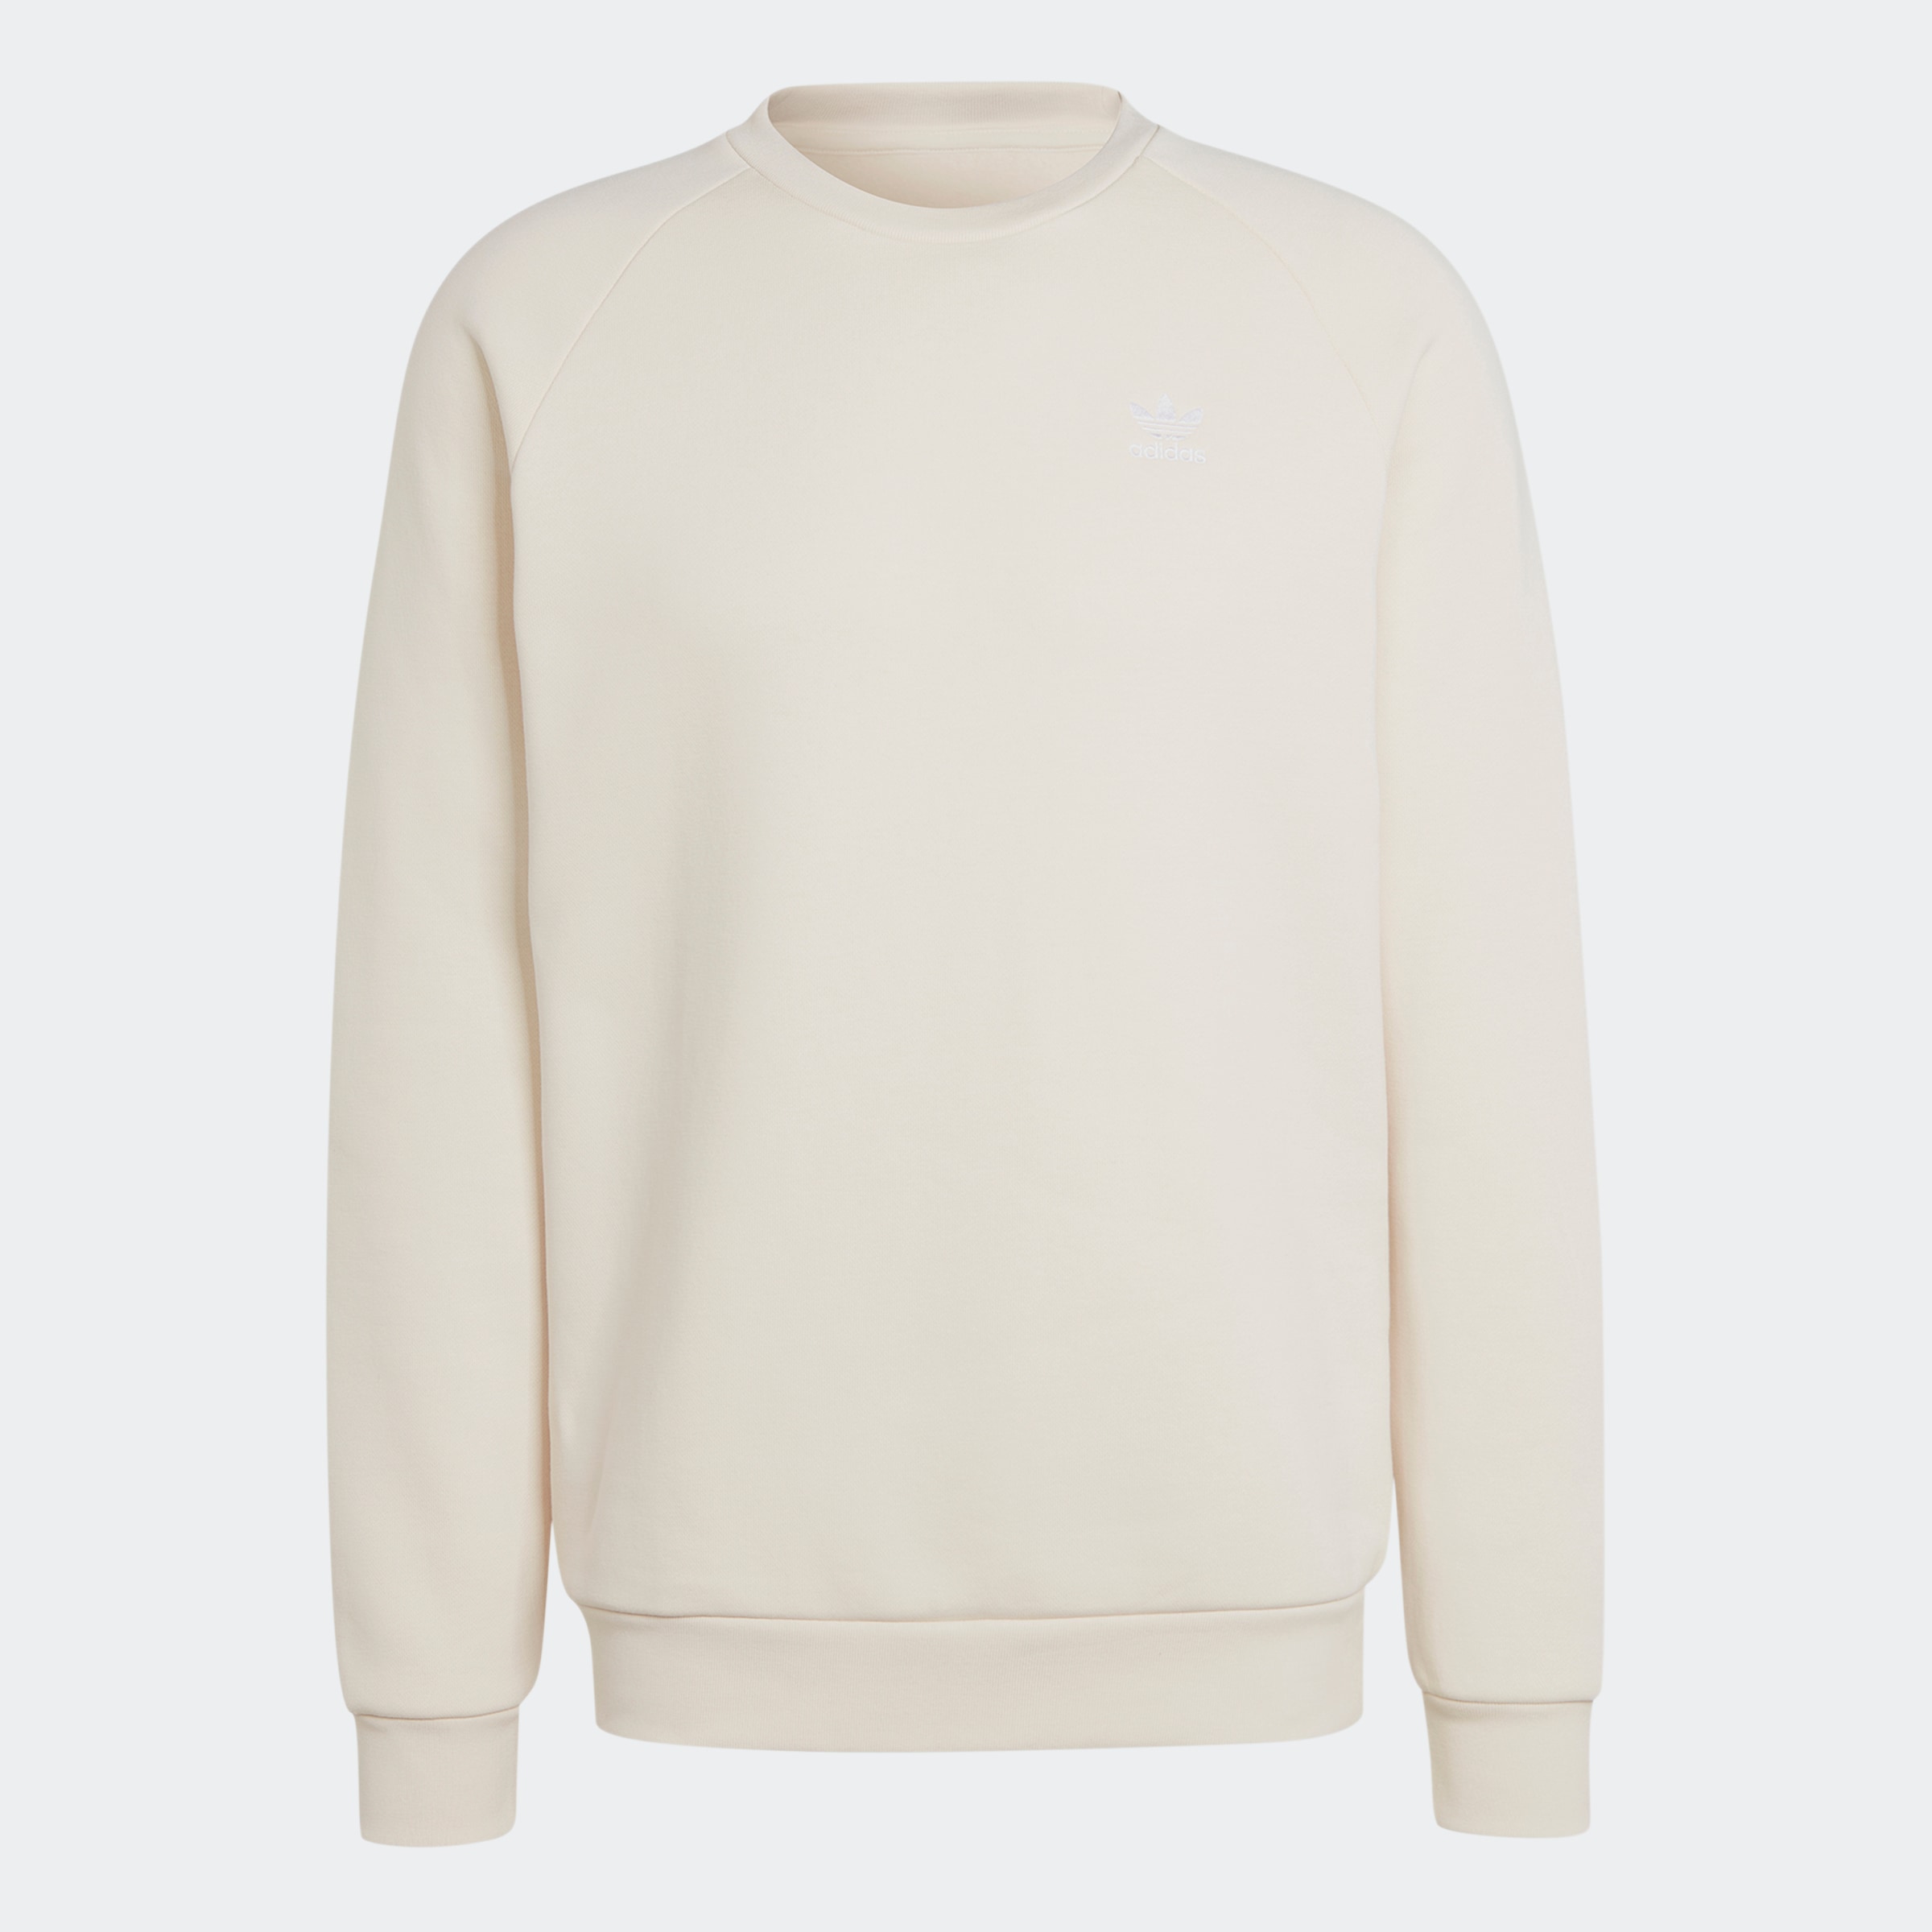 Rechnung ➤ kaufen Sweatshirts auf